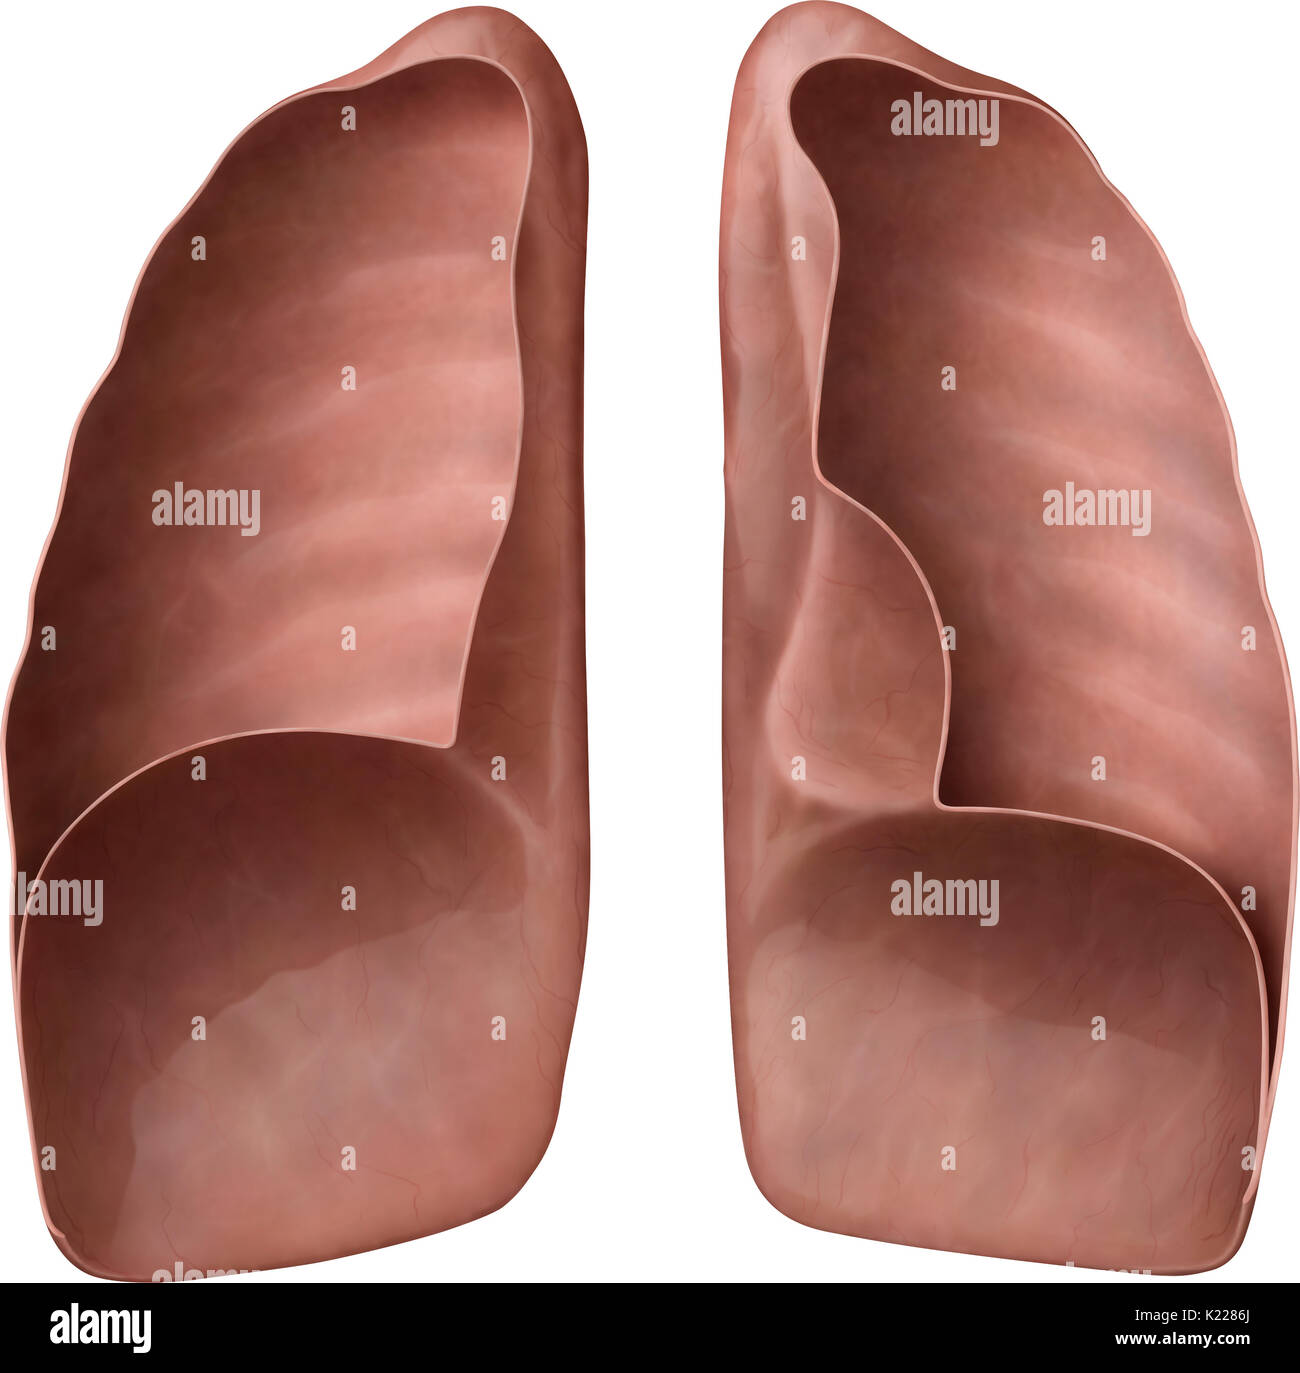 Gli organi respiratori formata da tessuto estensibile, in cui aria dal naso e cavità orale è portato, garantendo l'ossigenazione del sangue. Foto Stock